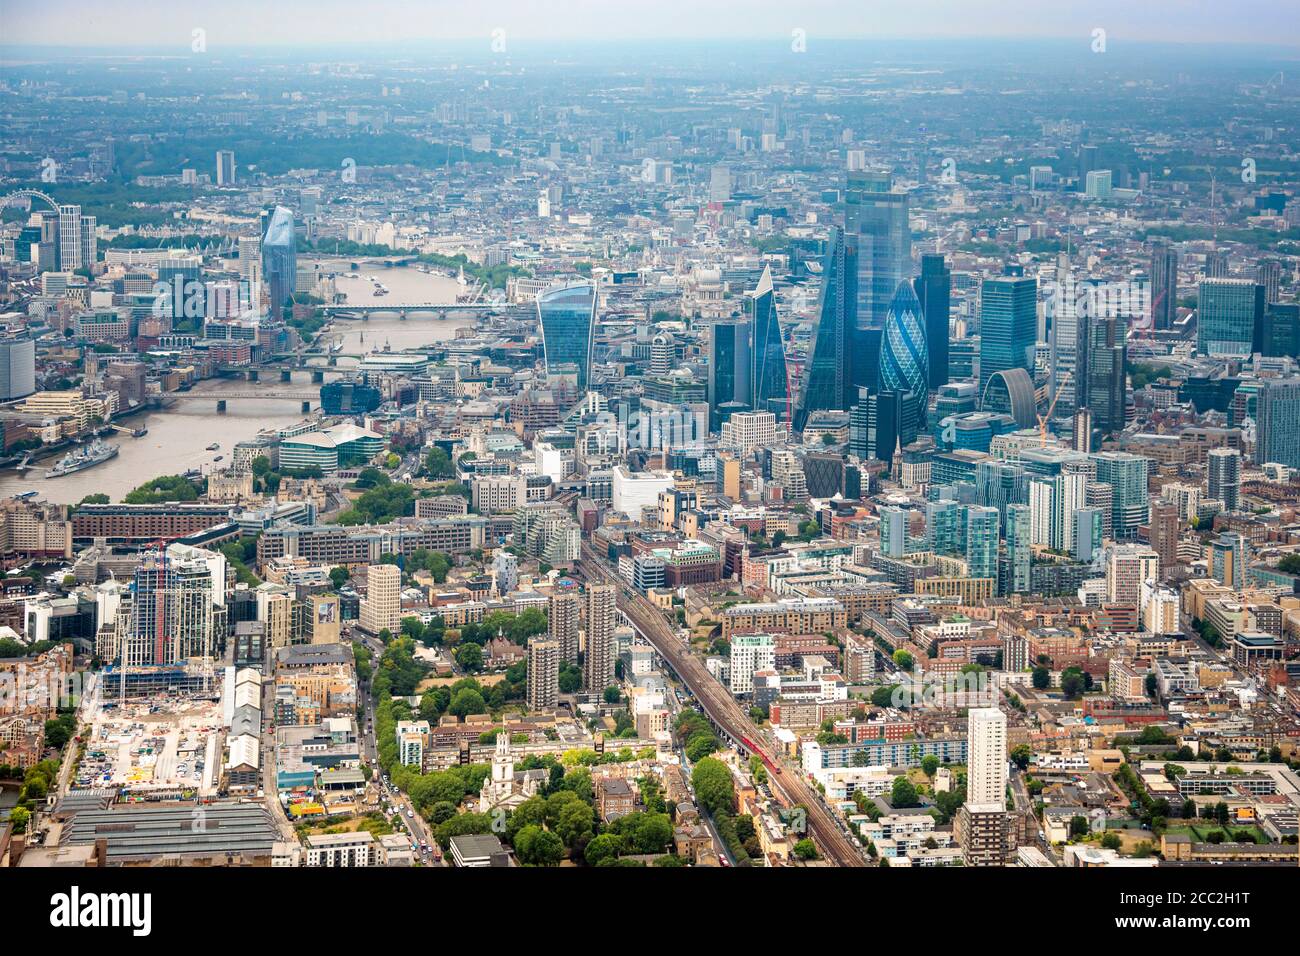 Vista aérea horizontal mirando al oeste desde la ciudad de Londres hacia el dique sobre Londres. Foto de stock